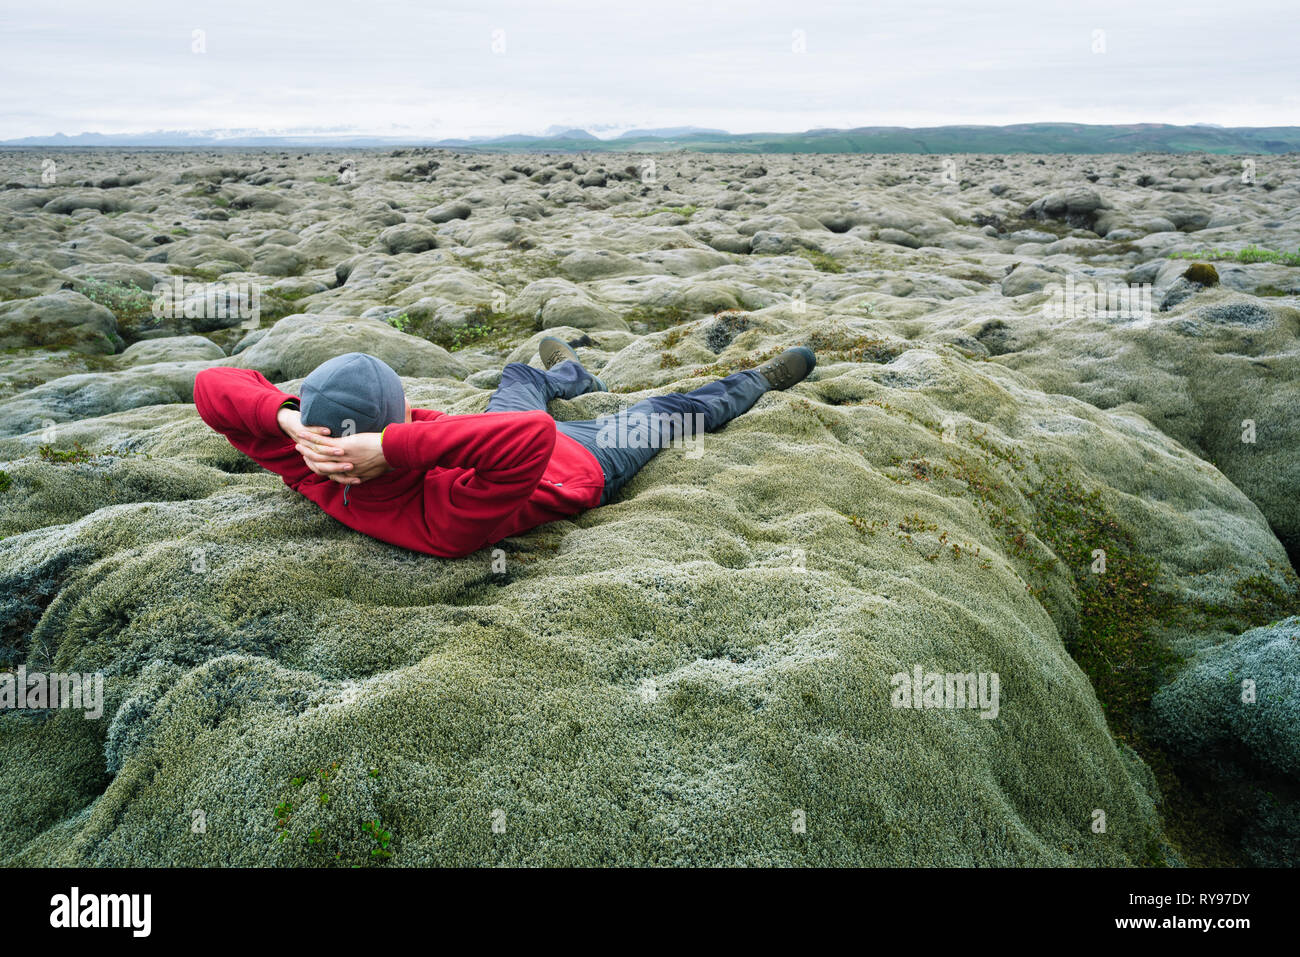 Voyageur dans l'homme veste rouge couché sur la mousse. Champ de lave sur la côte sud de l'Islande, l'Europe. Attraction touristique. Étonnant dans la nature. D'été nuageux Banque D'Images